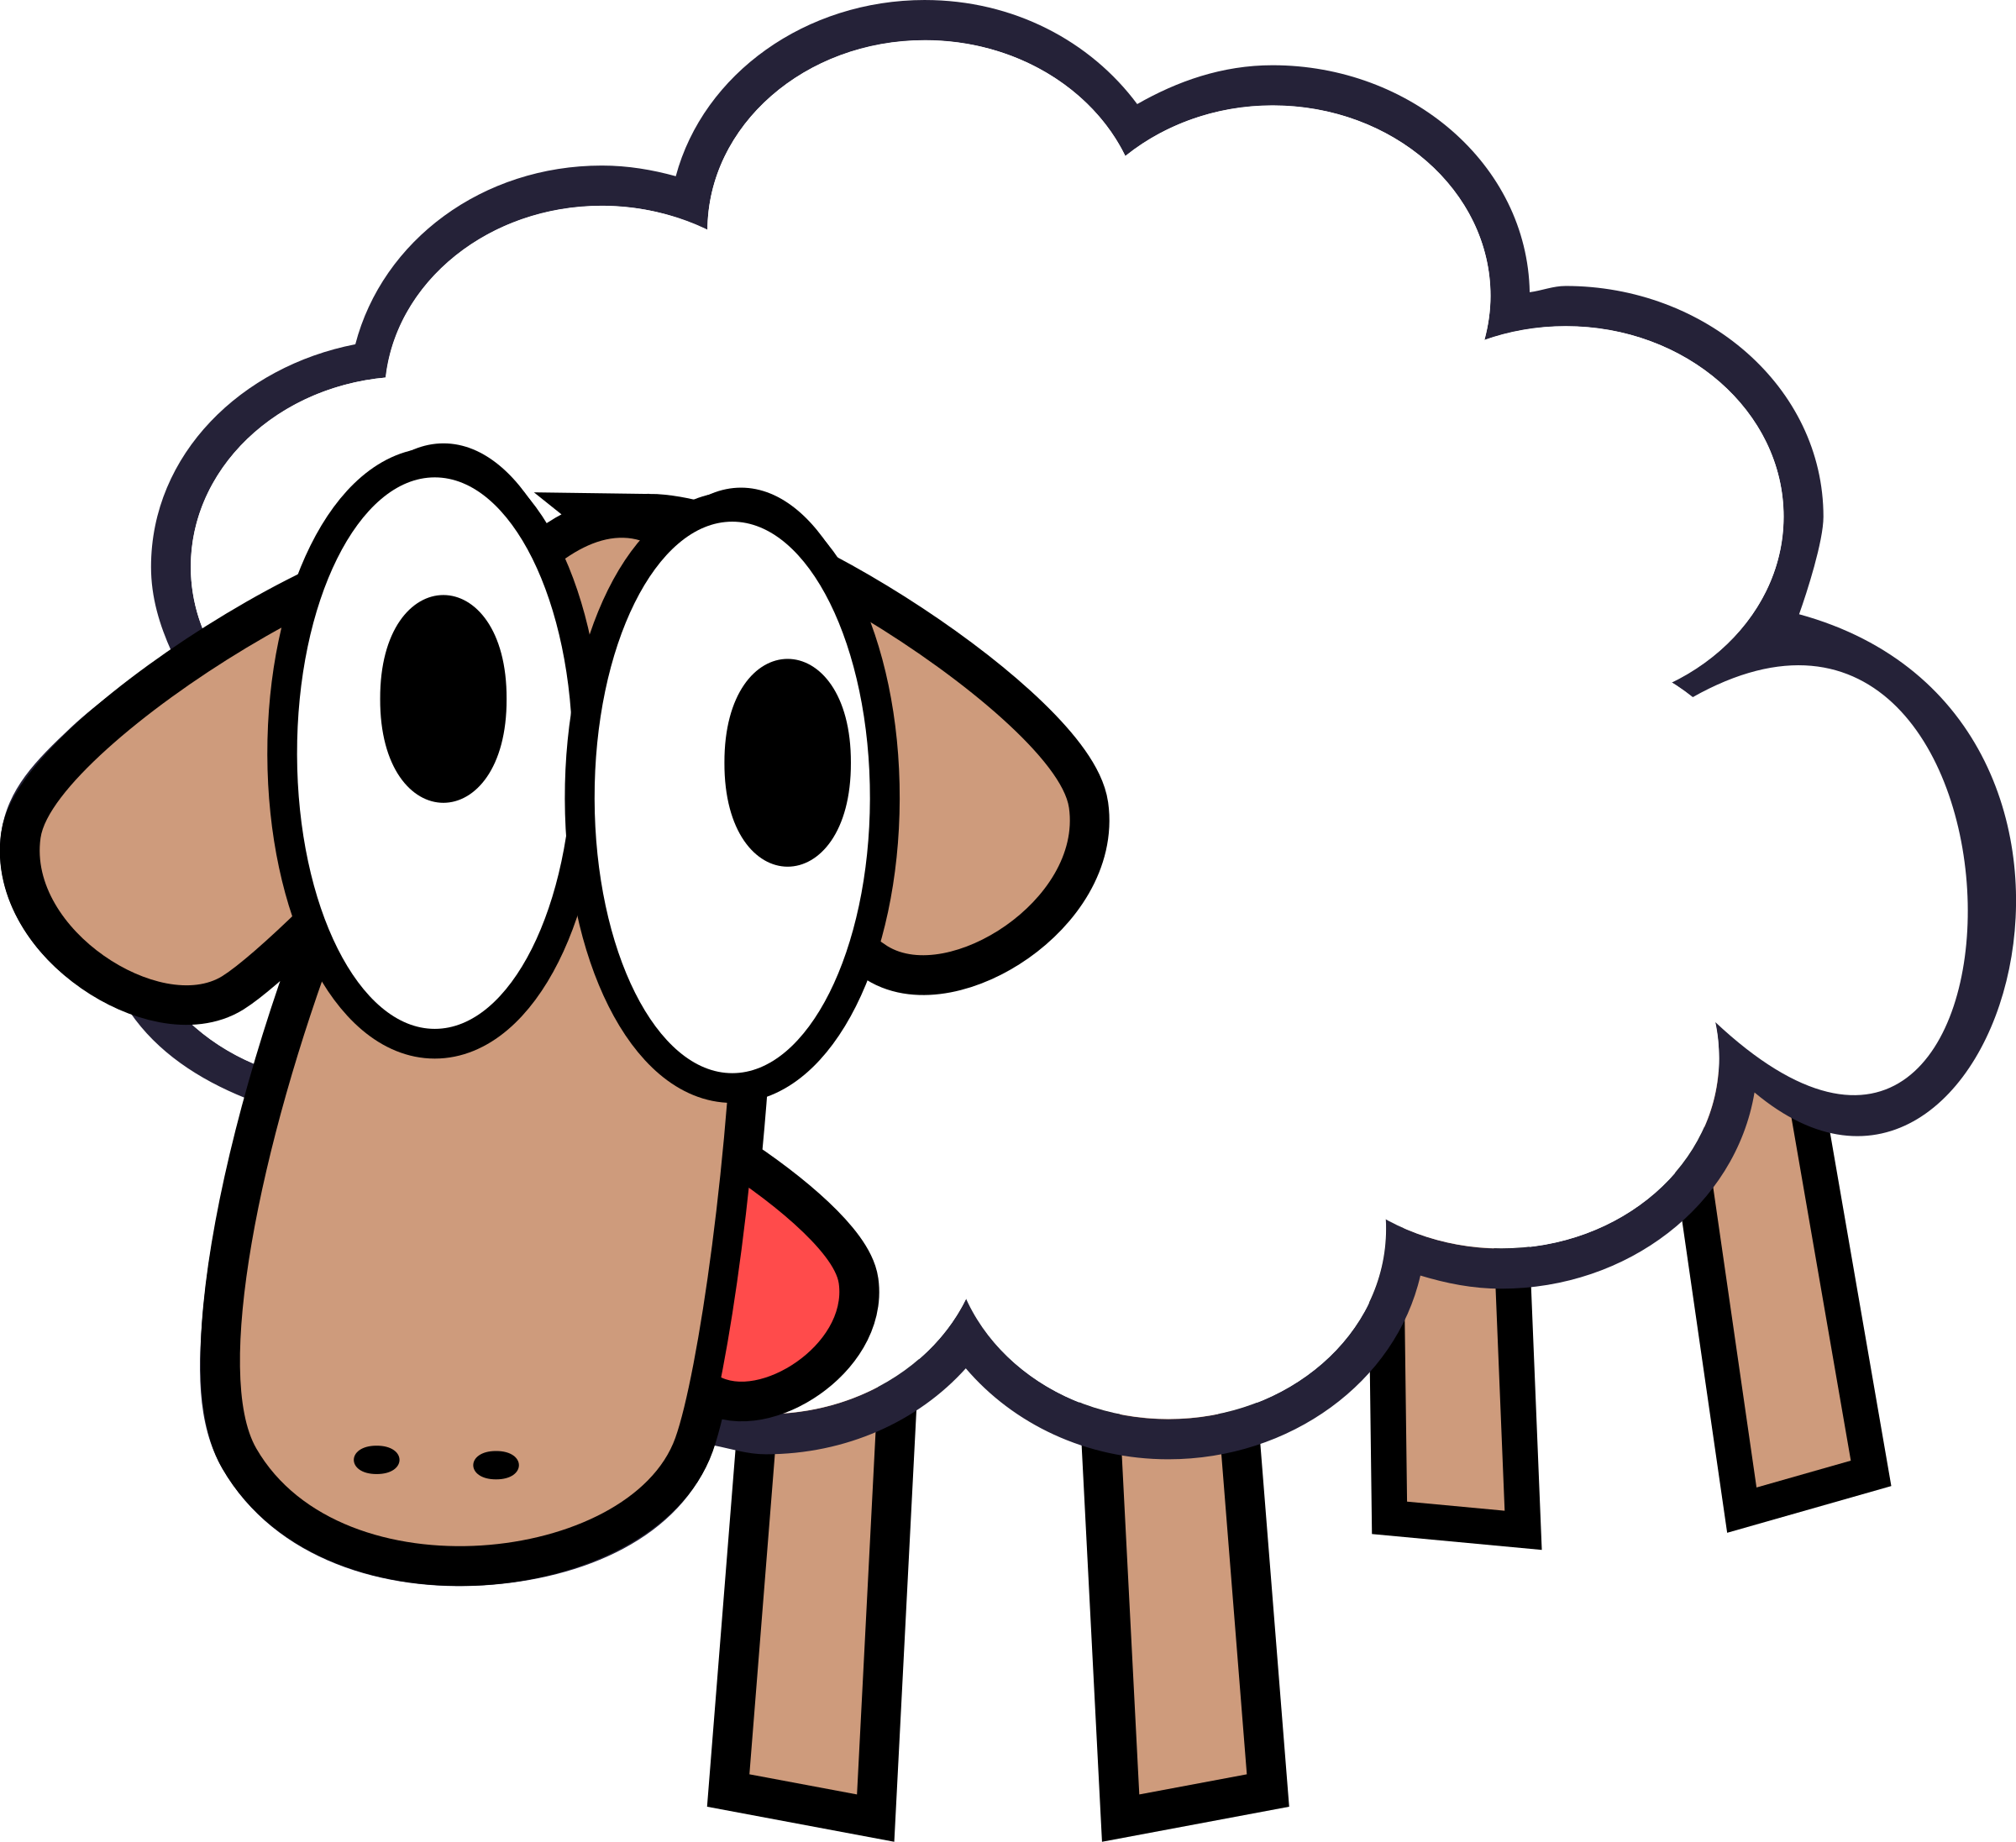 PNG Sheep Cartoon Transparent Sheep Cartoon.PNG Images. PlusPNG